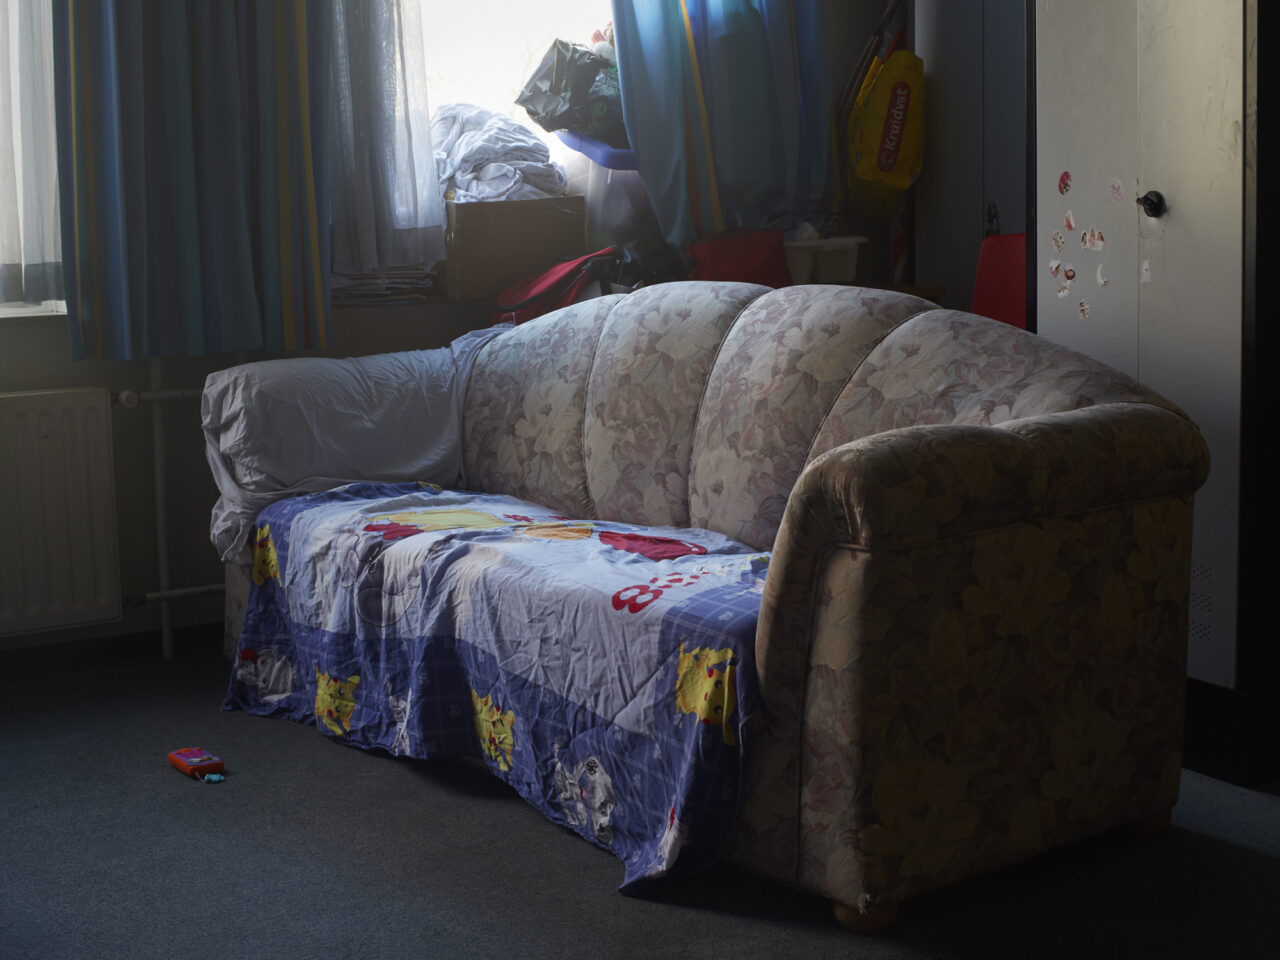 Denny en Angela’s kamer, Gezinslocatie  voor uitgeprocedeerde asielzoekers met beperkte bewegingsvrijheid, Katwijk 